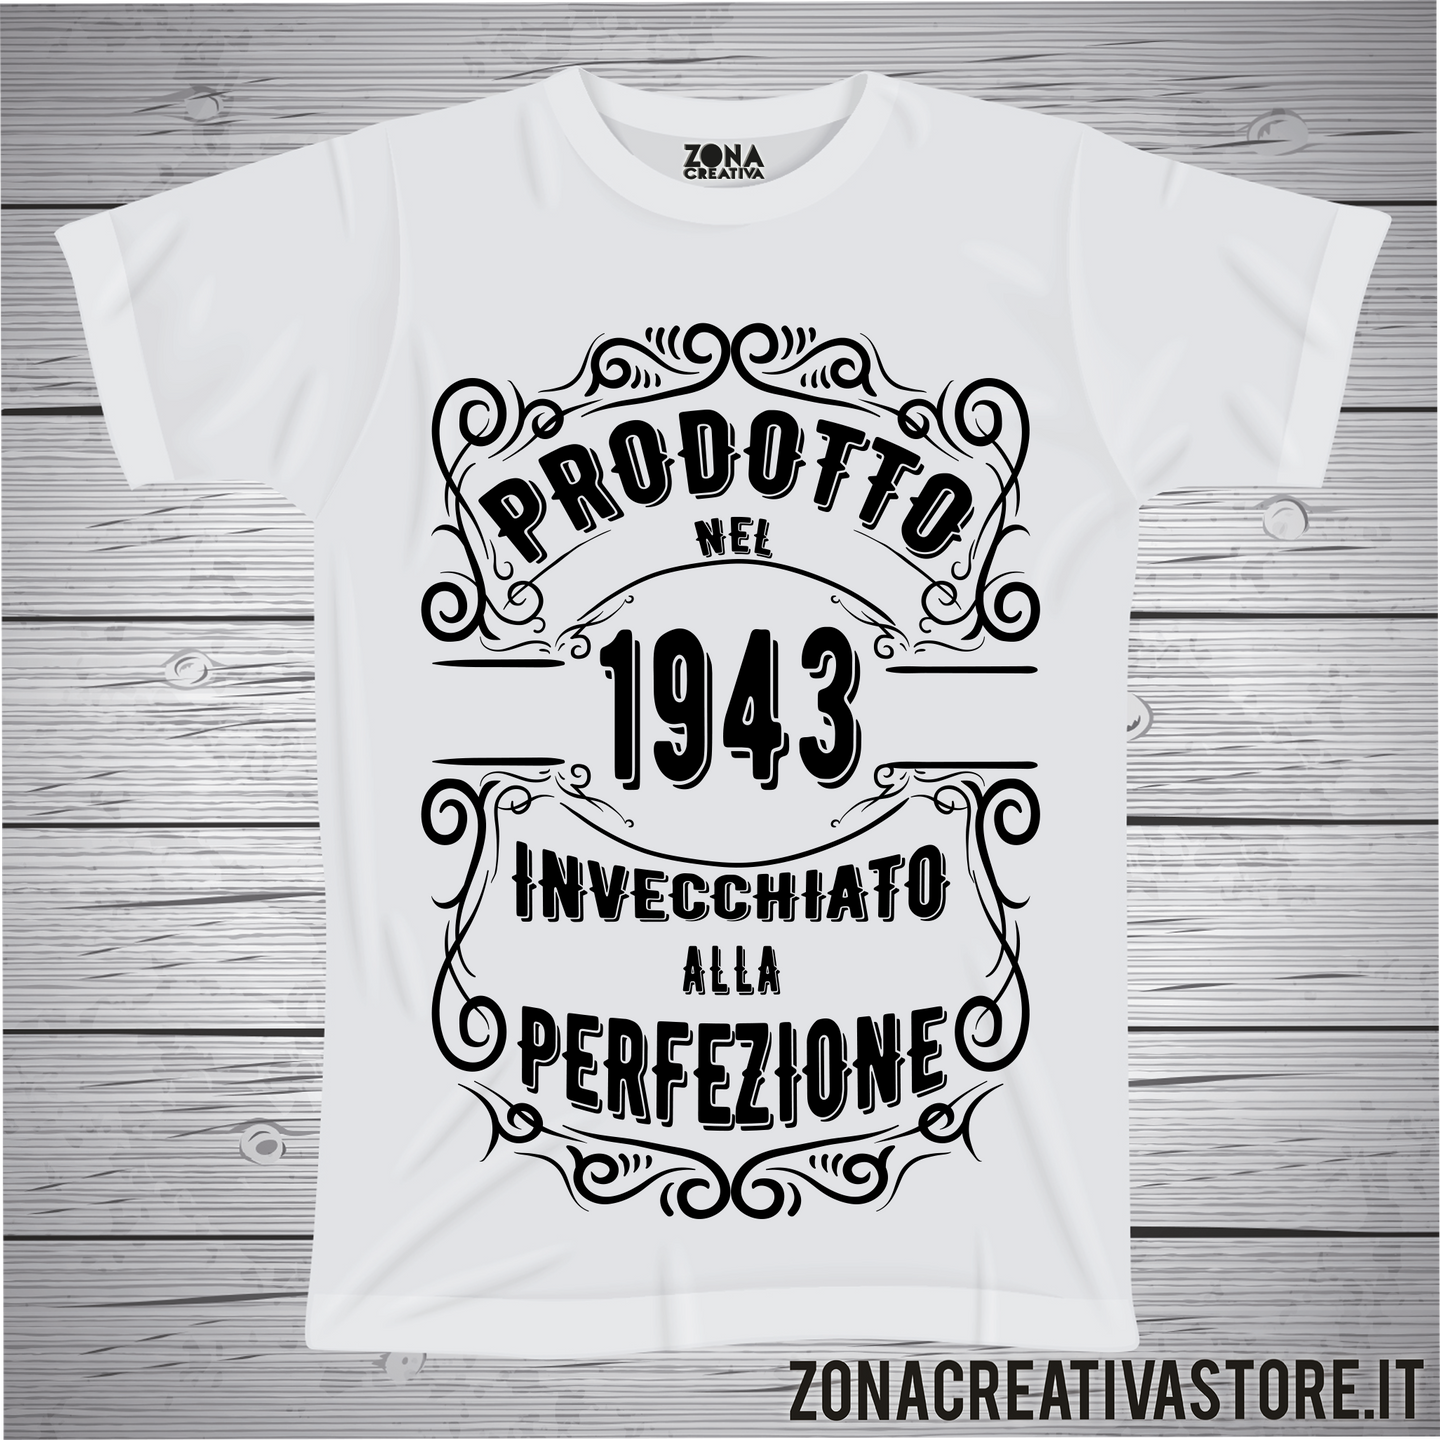 T-shirt per festa di compleanno PRODOTTO NEL 1943 INVECCHIATO ALLA PERFEZIONE